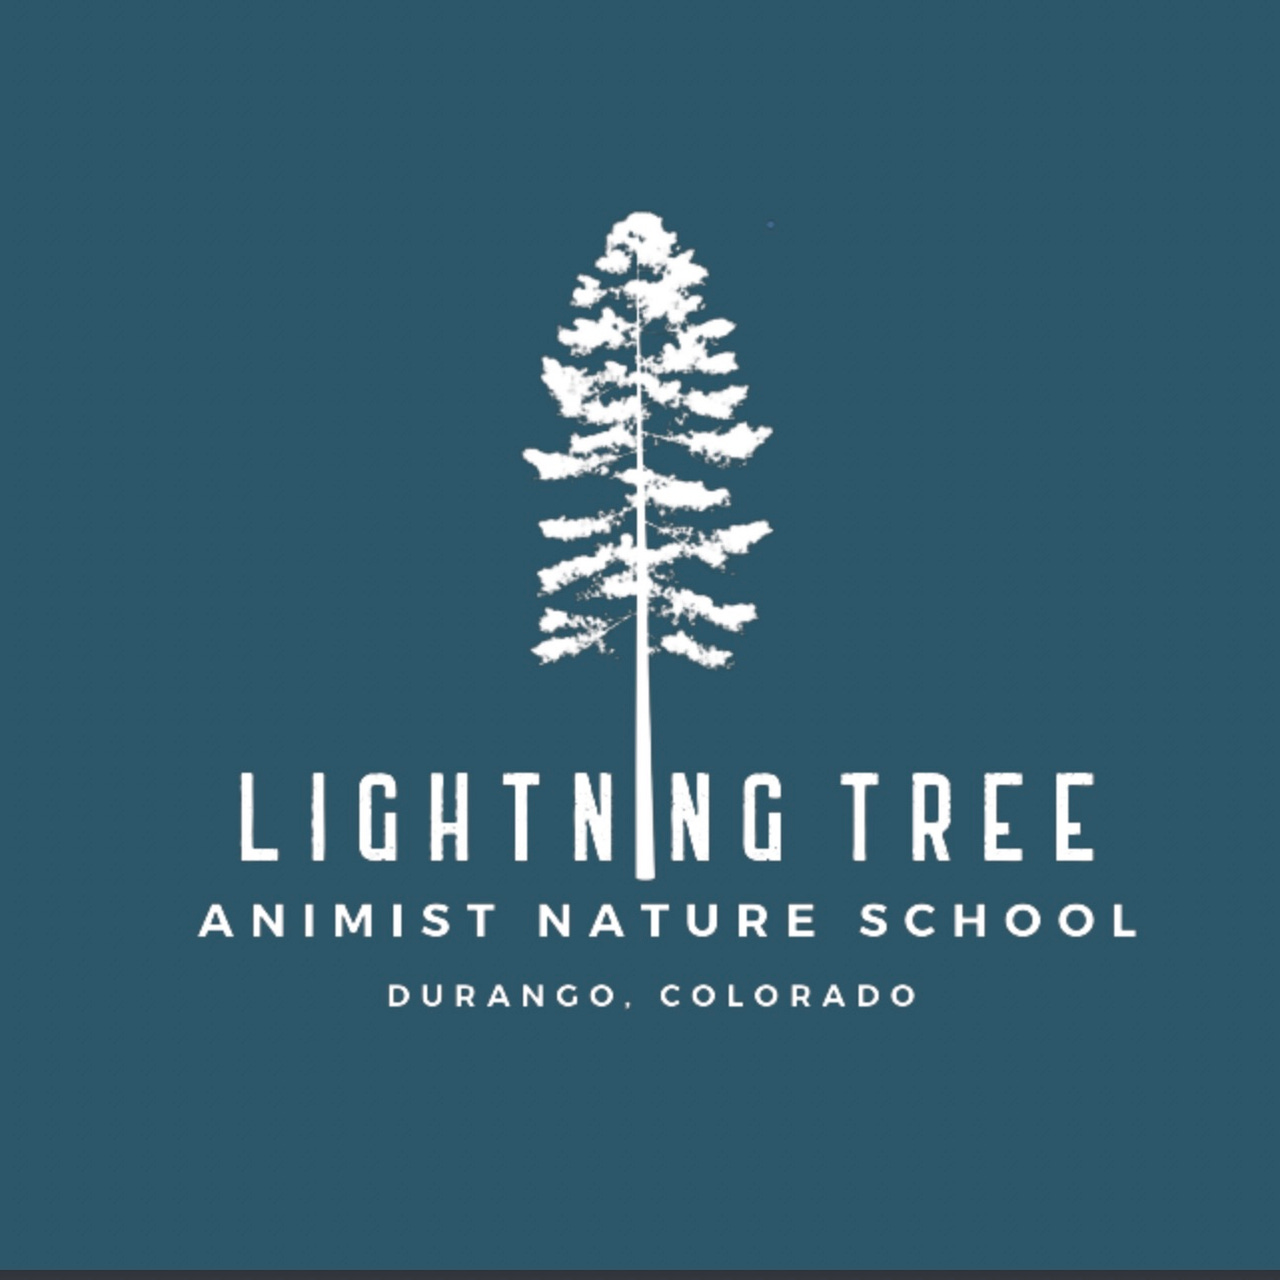 Artwork for Branches: Lightning Tree Animist Nature School's Blog